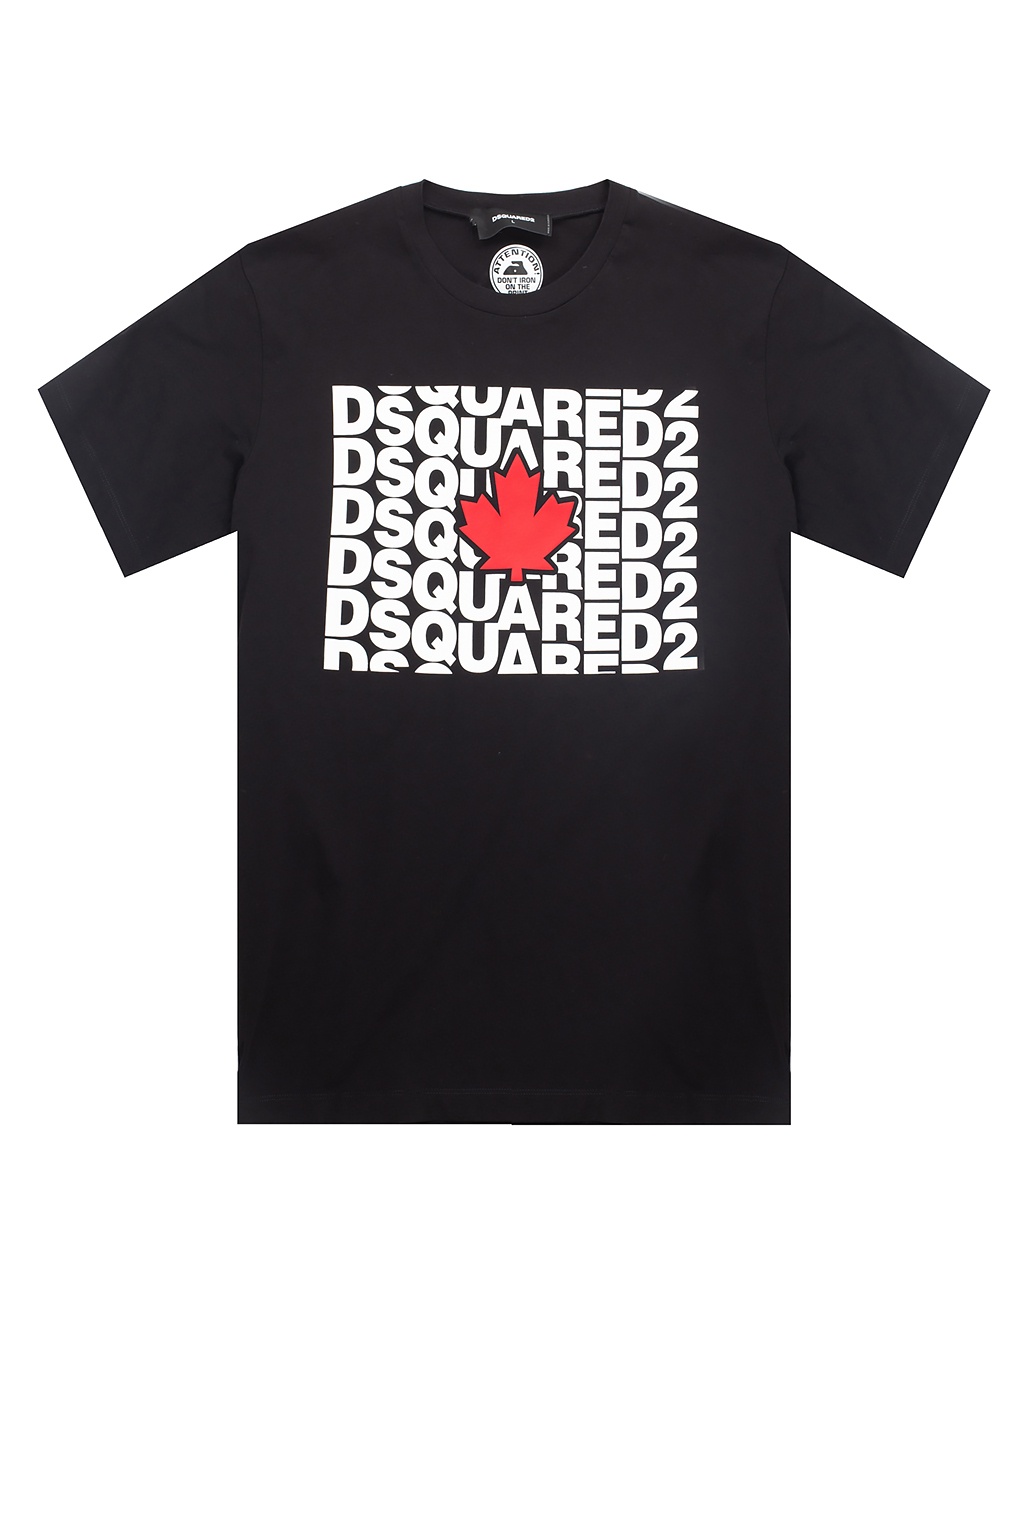 shirt - IetpShops - GUESS Royal Bomber Jacket | Dsquared2 Printed